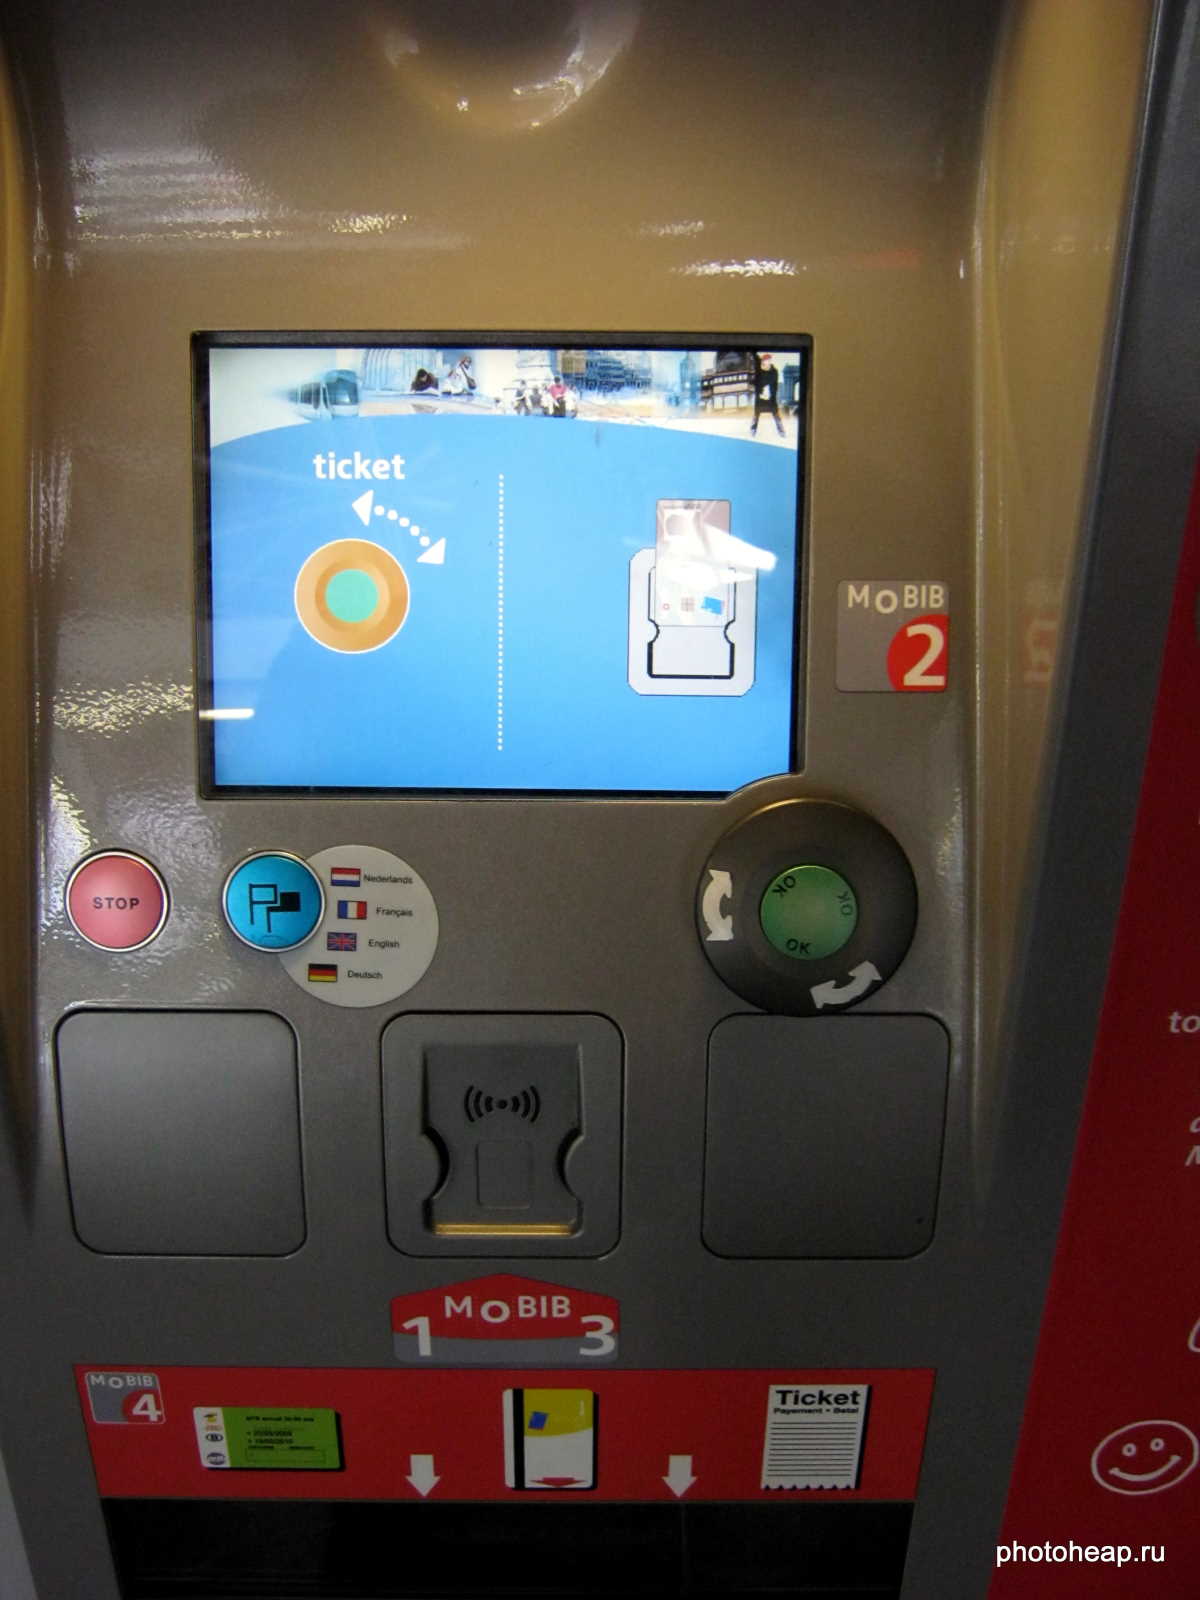 Brussels - Metro ticket machine